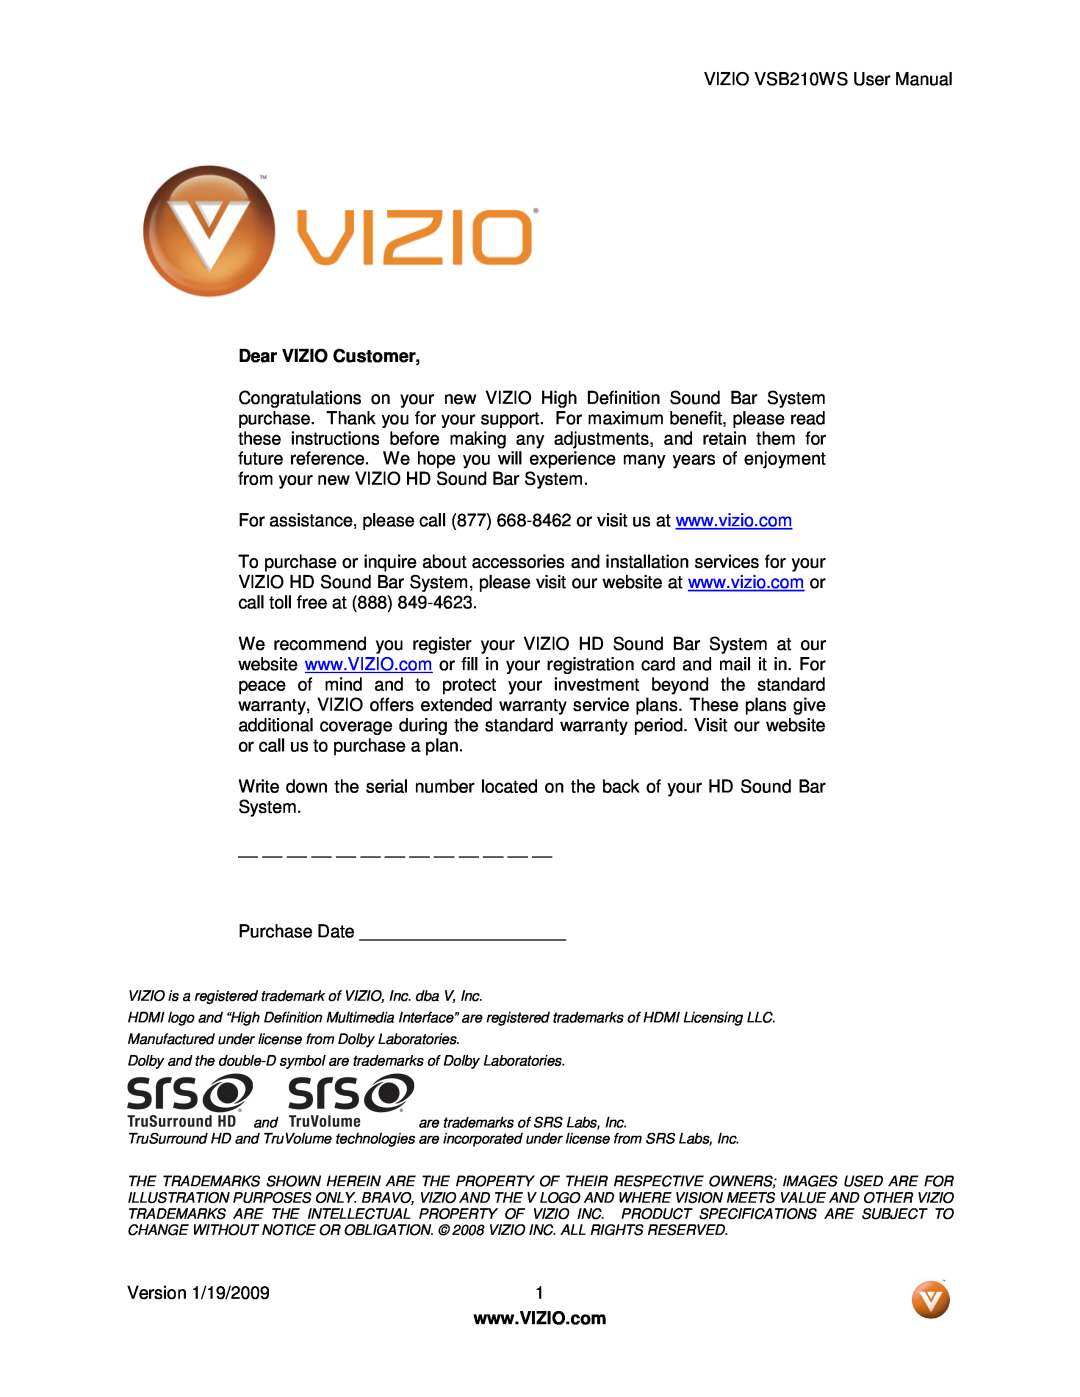 Vizio VSB210WS user manual Dear VIZIO Customer 